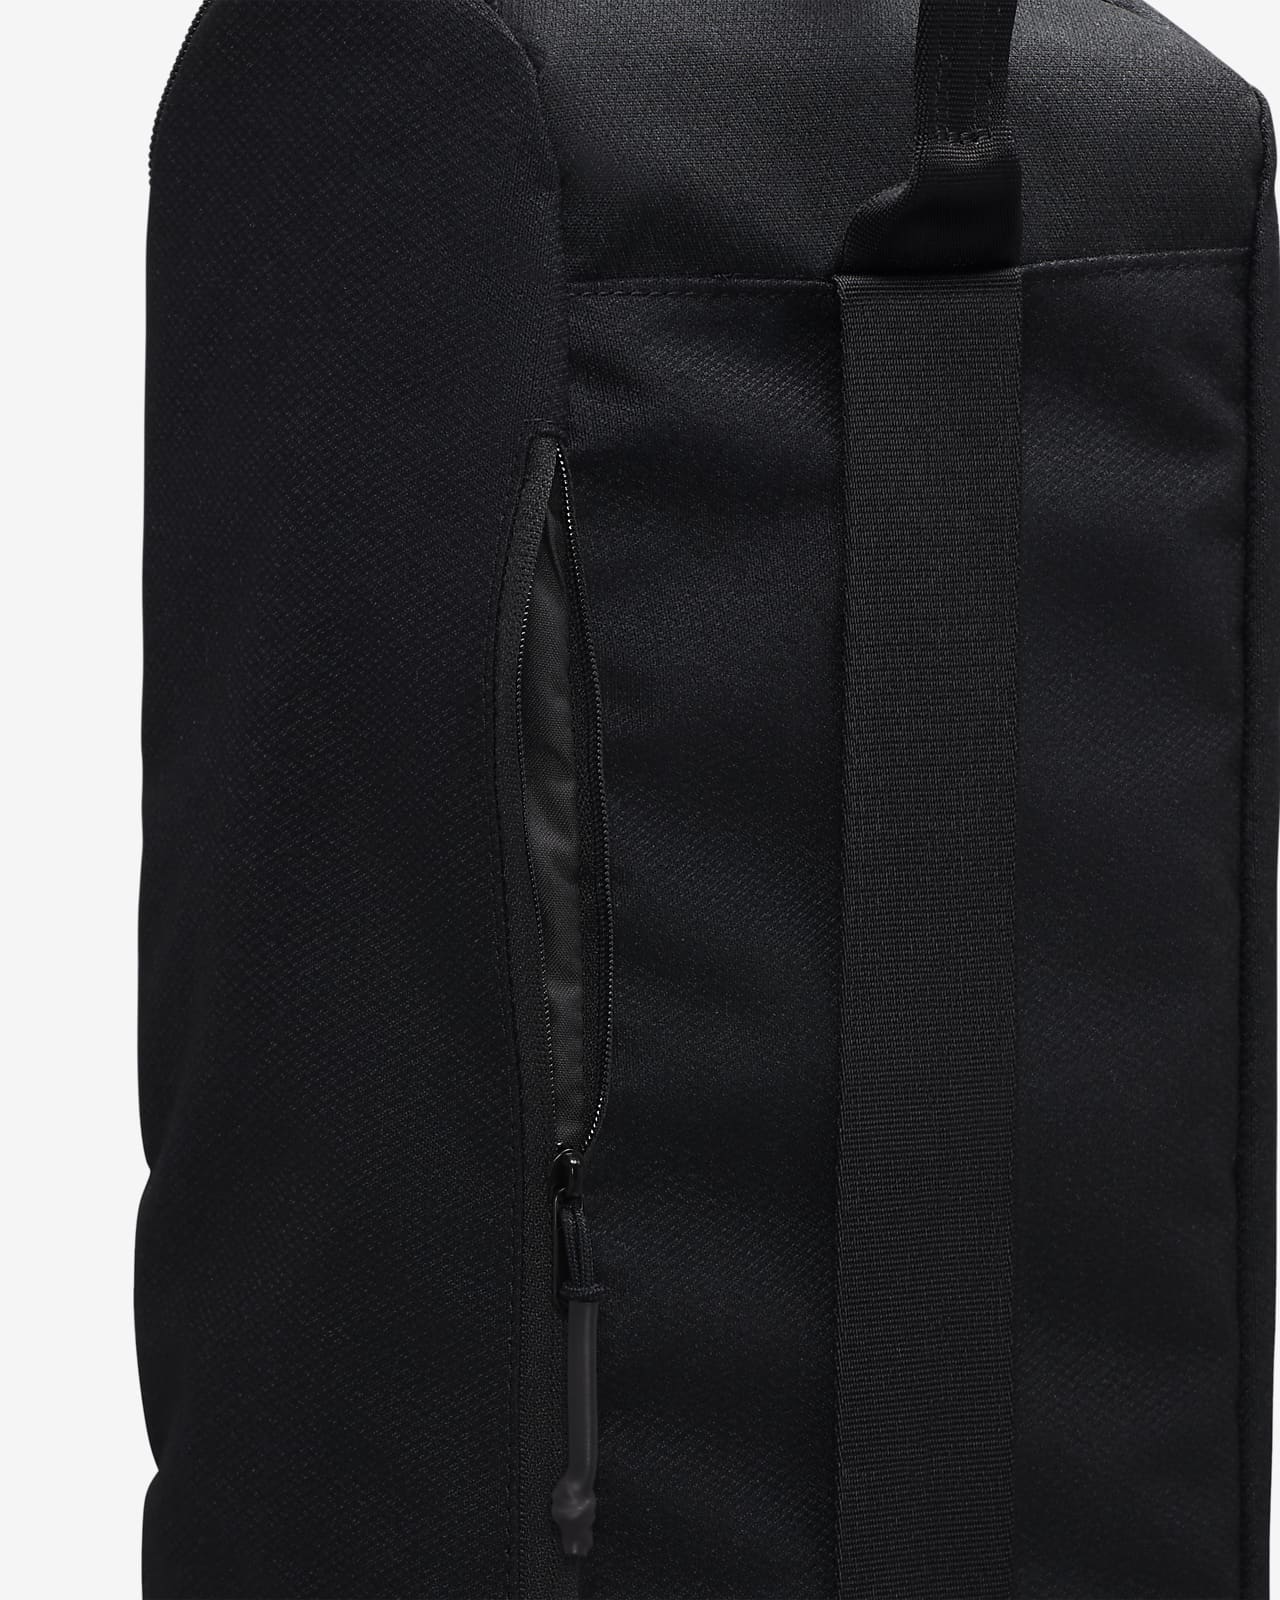 Adjustable Yoga Mat Bag - Resale